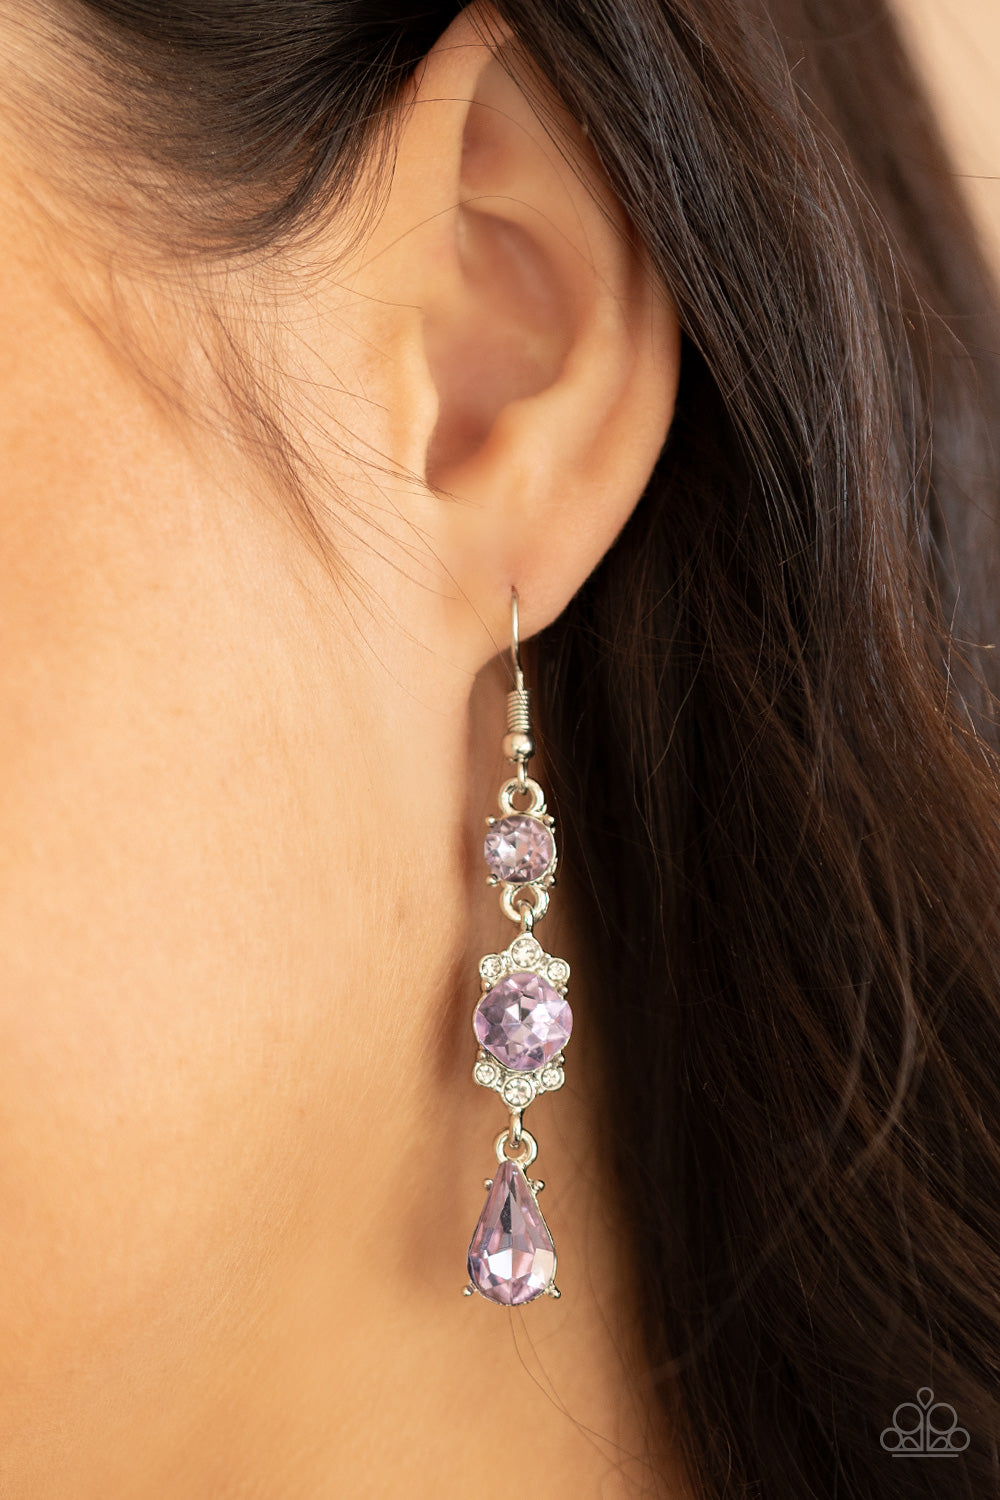 Outstanding Opulence Earrings - Purple